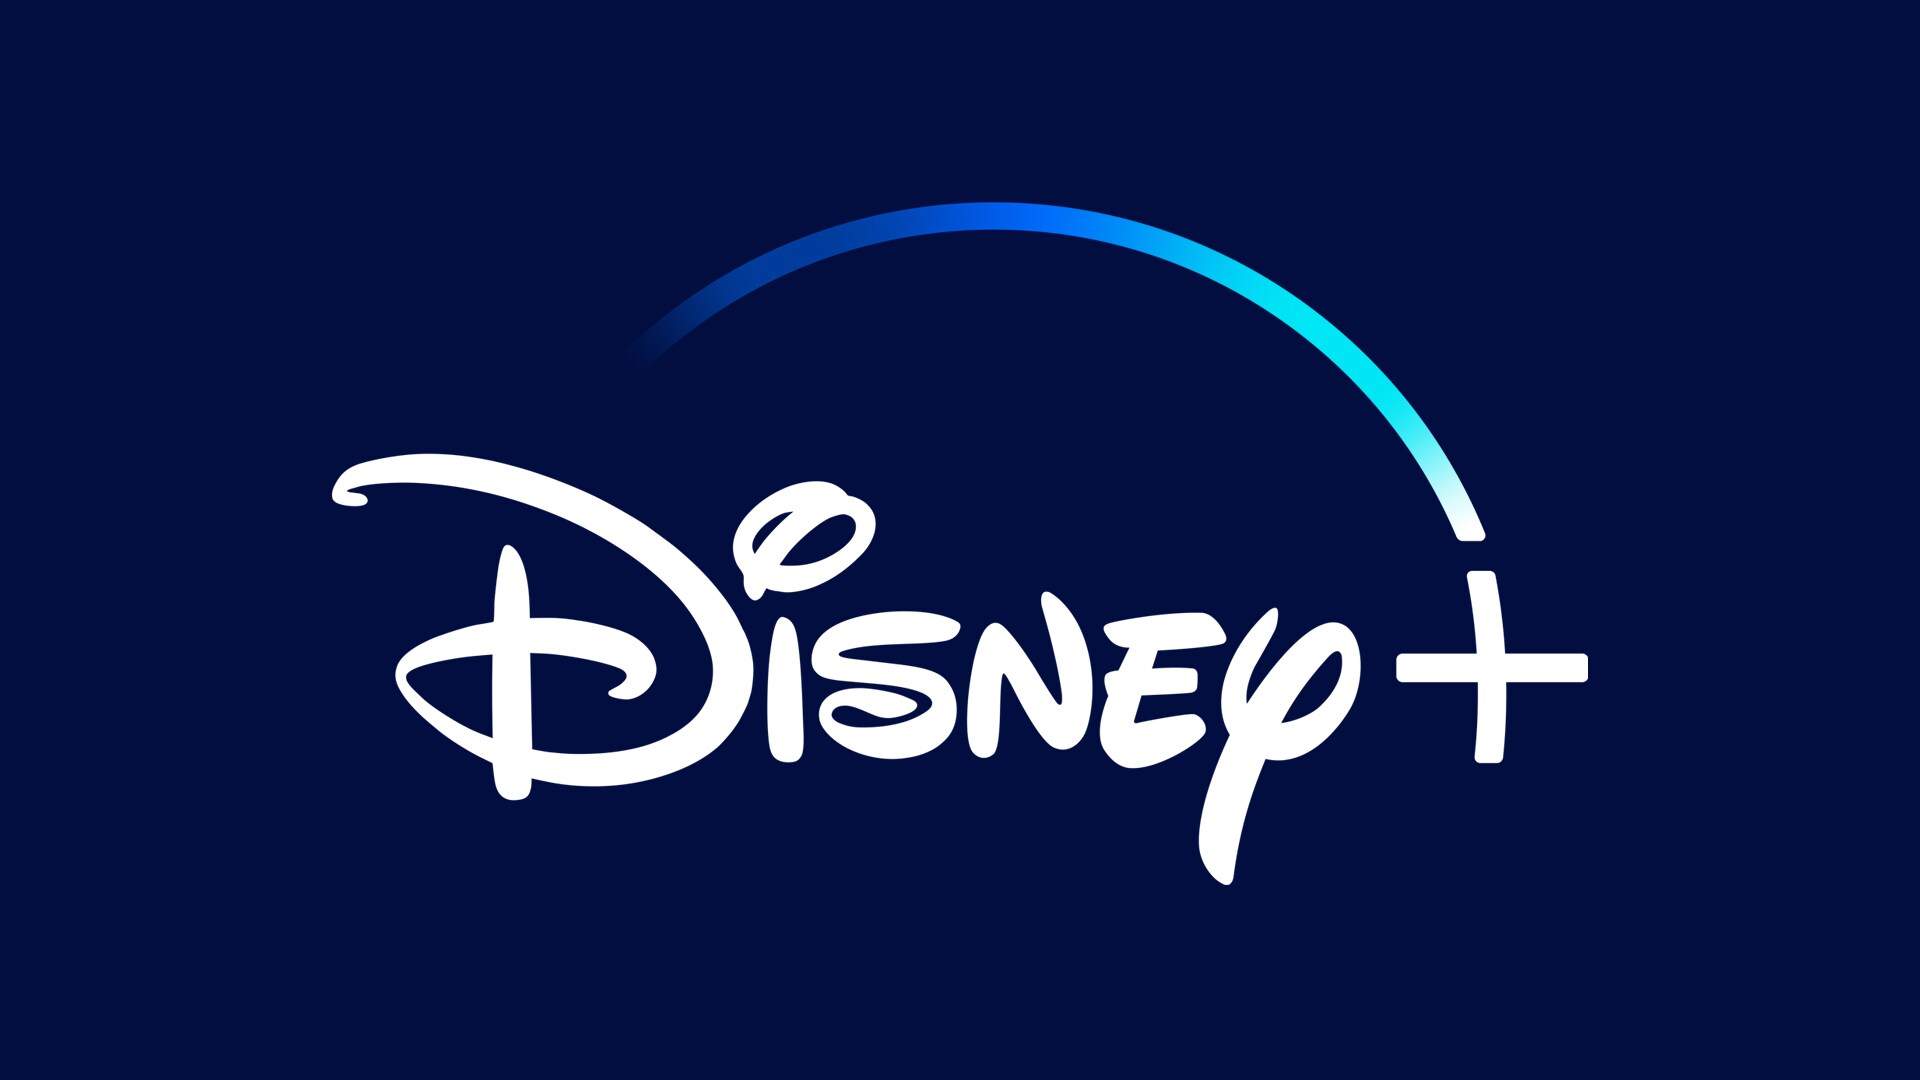 Disney+Day traz desconto na assinatura da plataforma